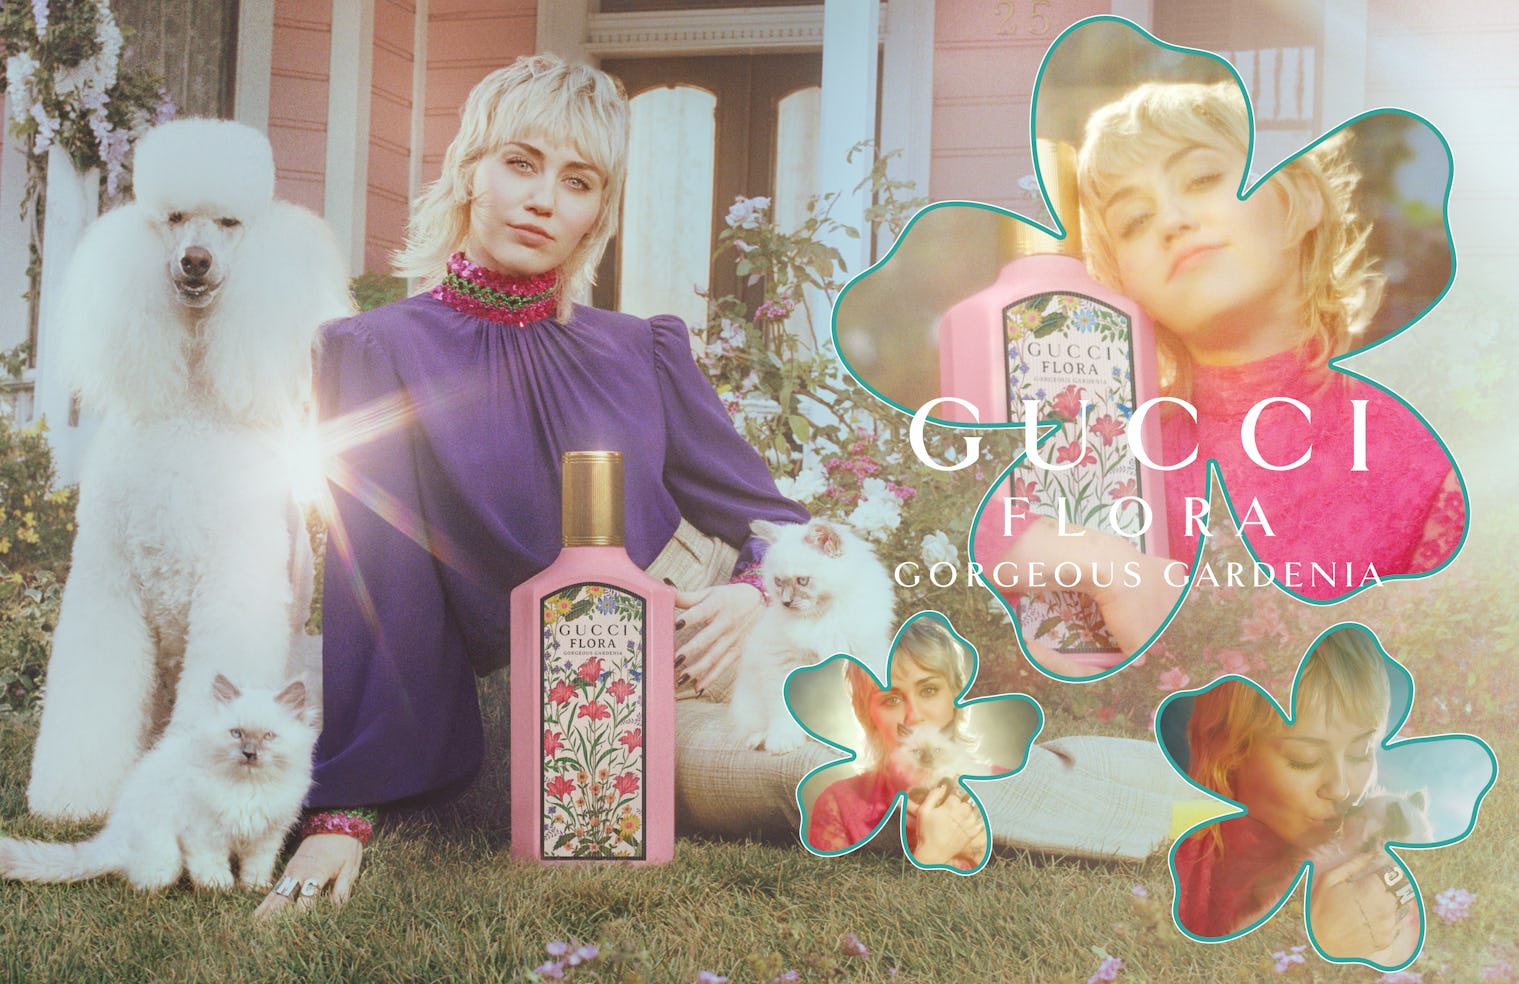 Miley Cyrus Stars in Gucci’s New Flora Gardenia Campaign